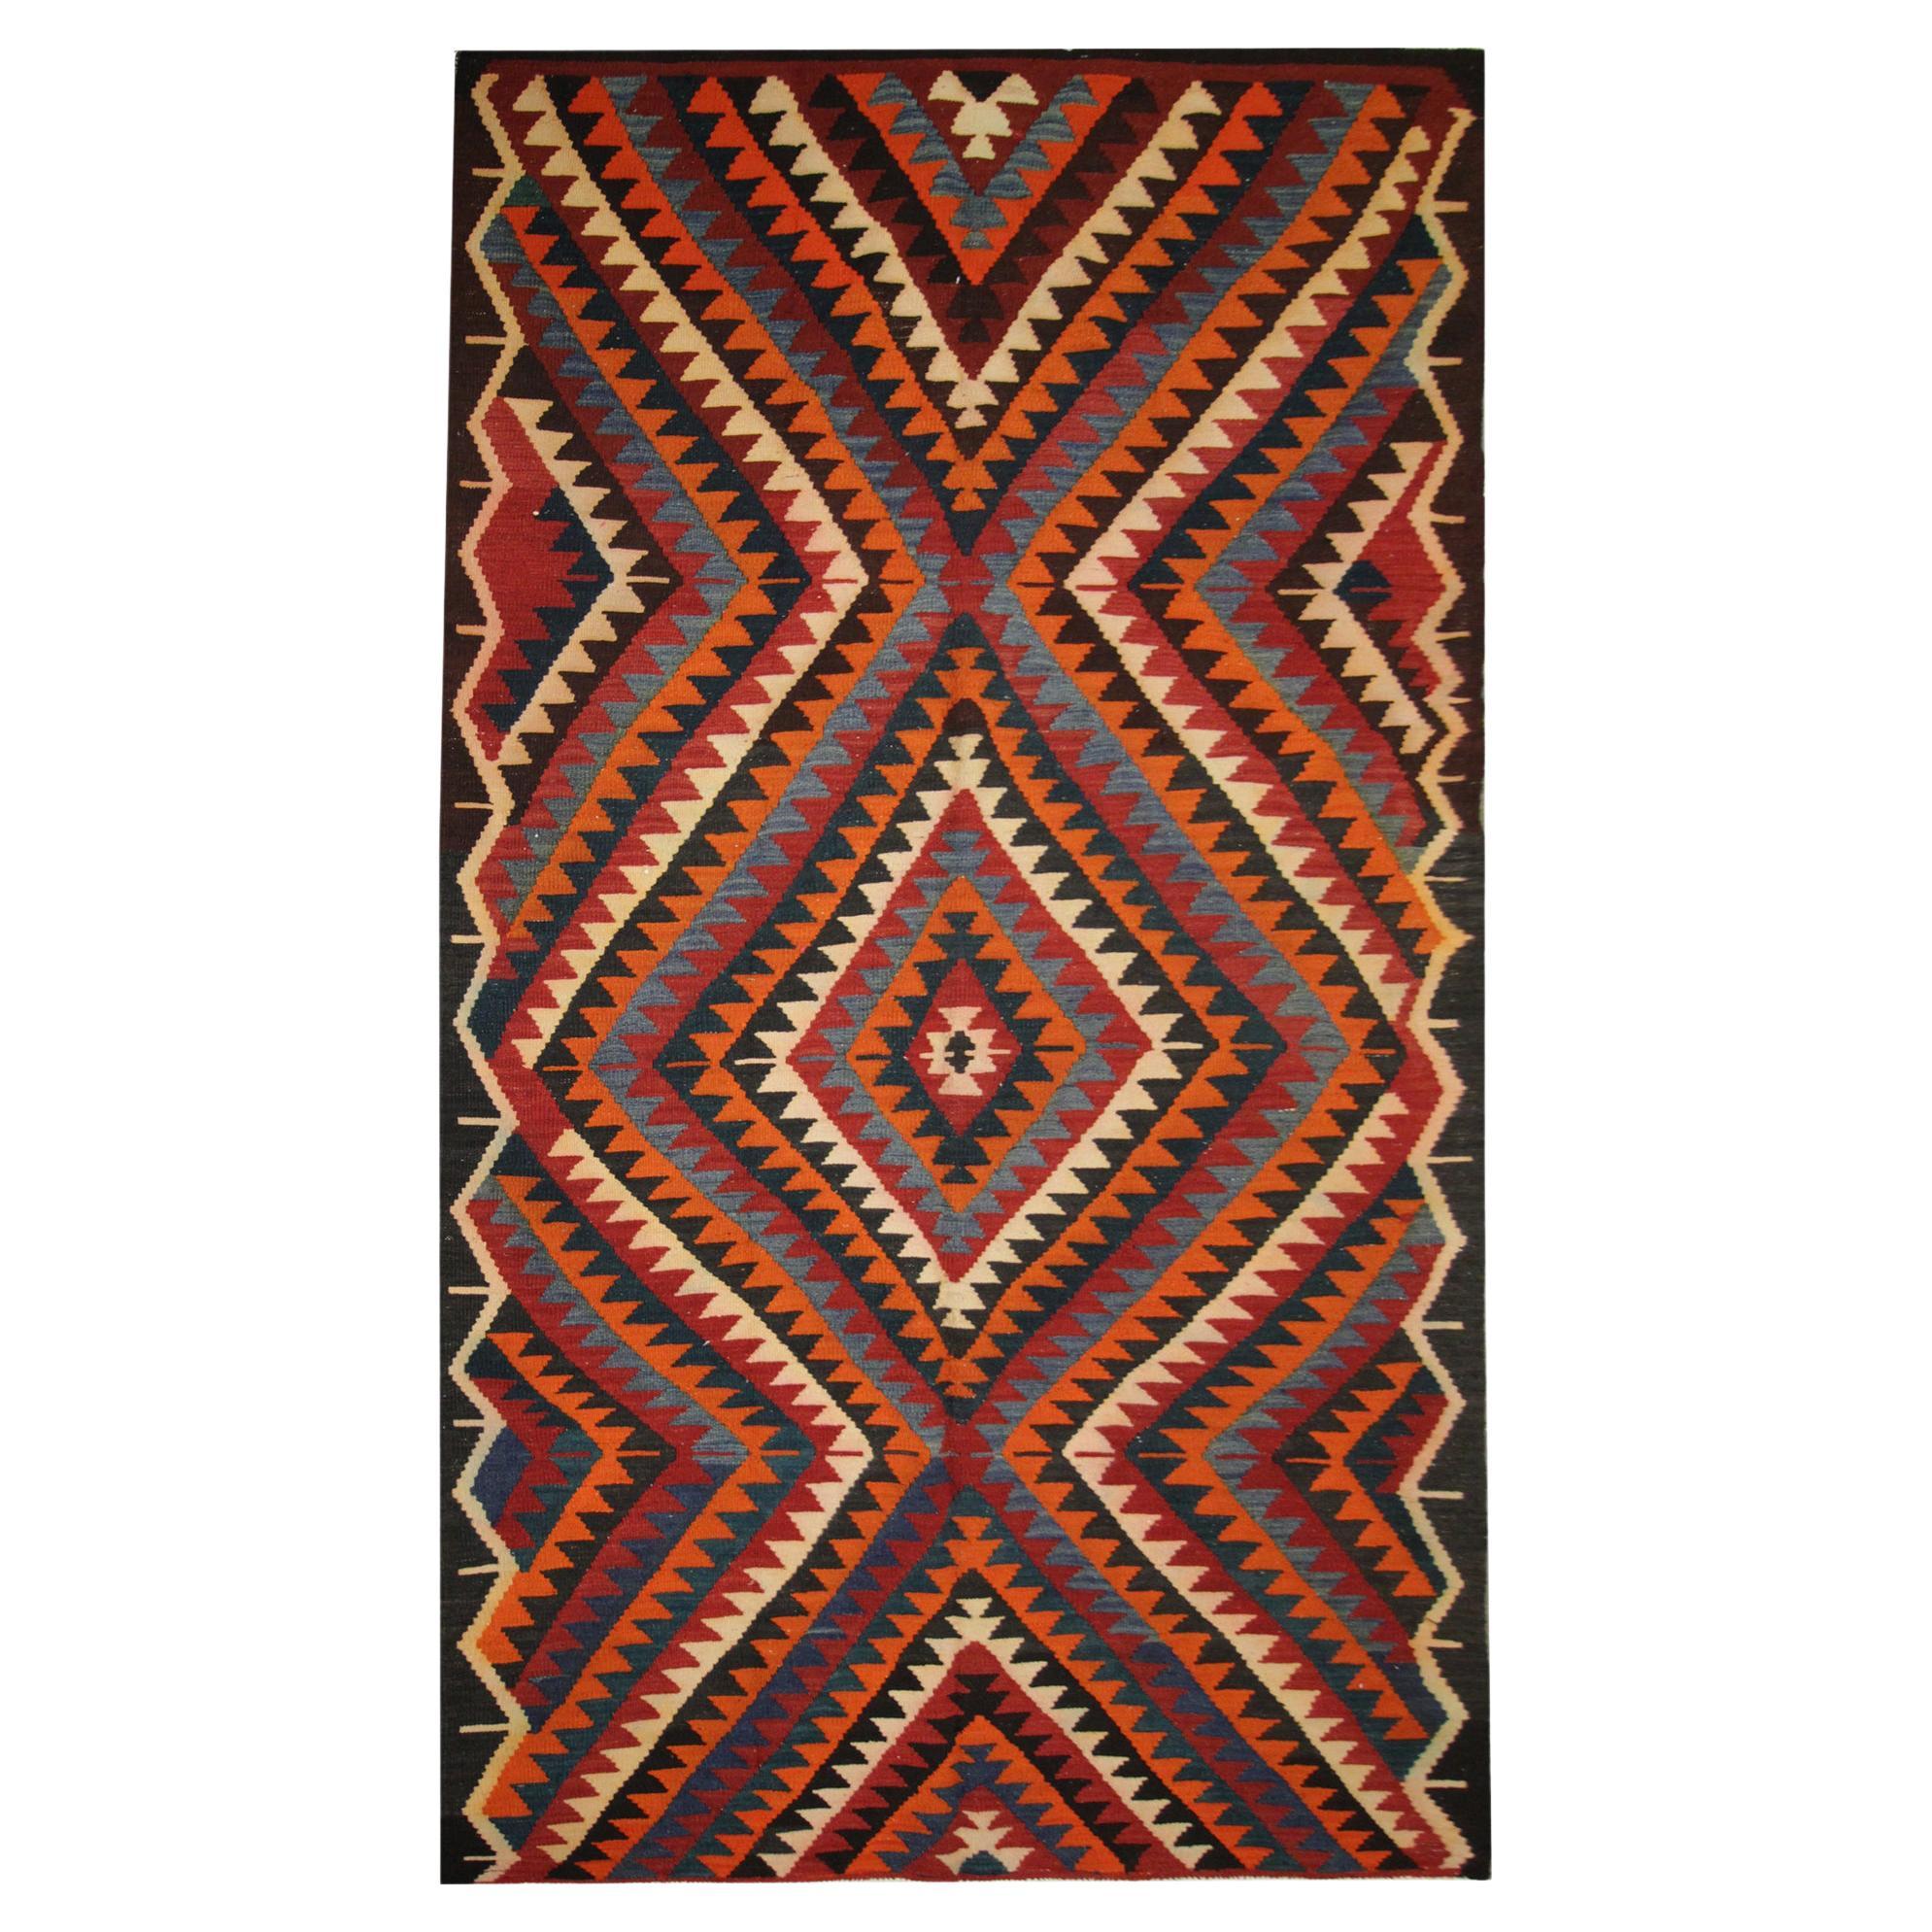 Geometrischer Woll-Kelim-Teppich, traditioneller flachgewebter Flachgewebter Kelim-Teppich